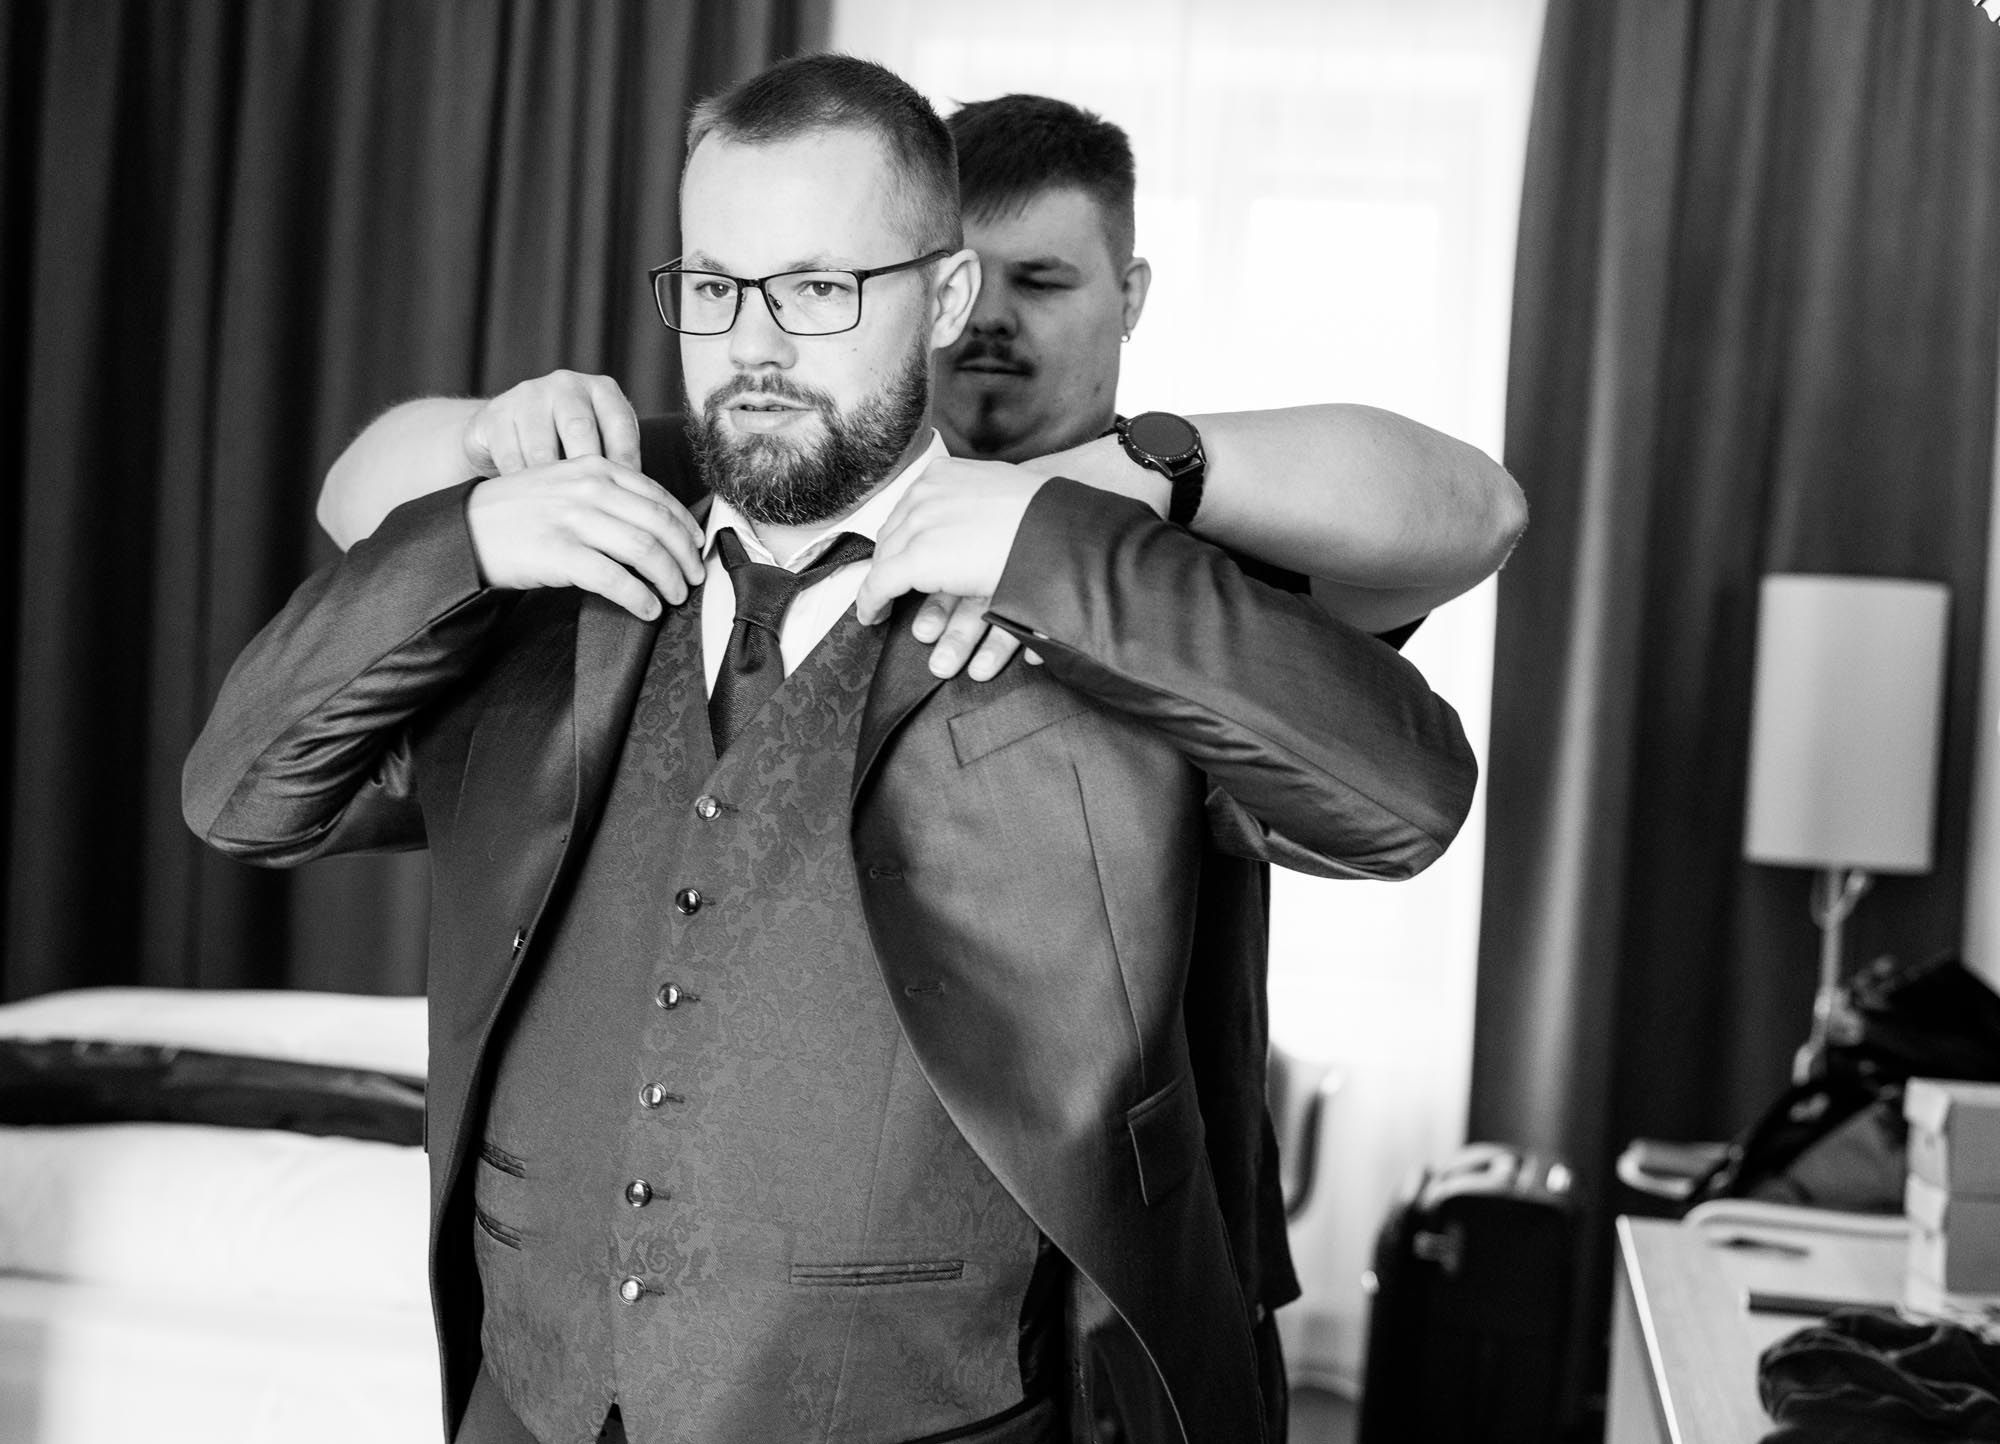 Hochzeitsfotos_Hochzeitsreportage in Wien_Getting Ready_Trauzeuge hilft Bräutigam beim Sakko anziehen